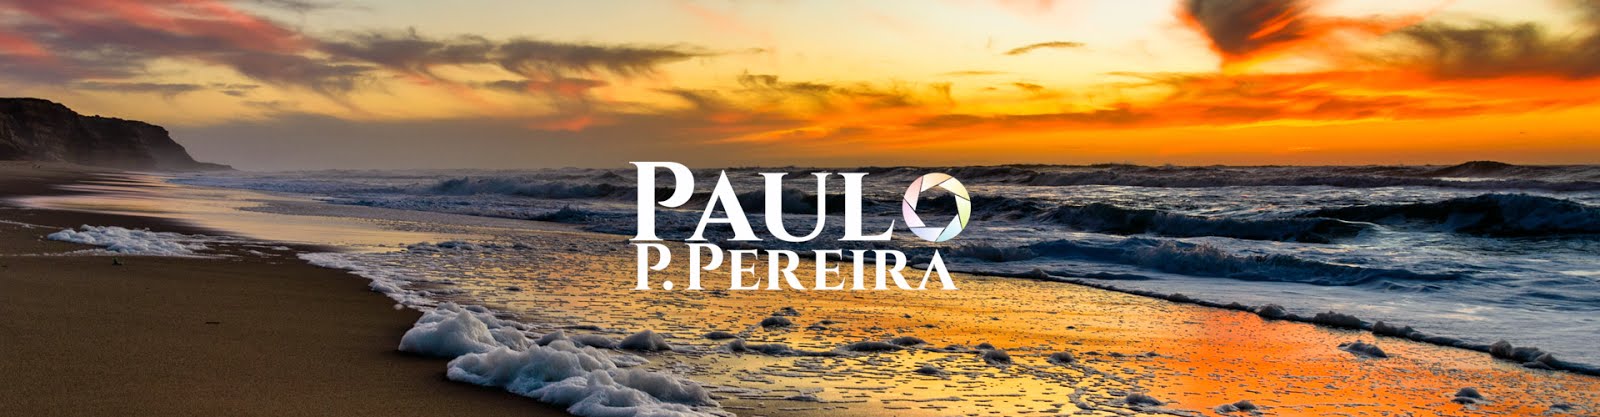 Paulo P Pereira